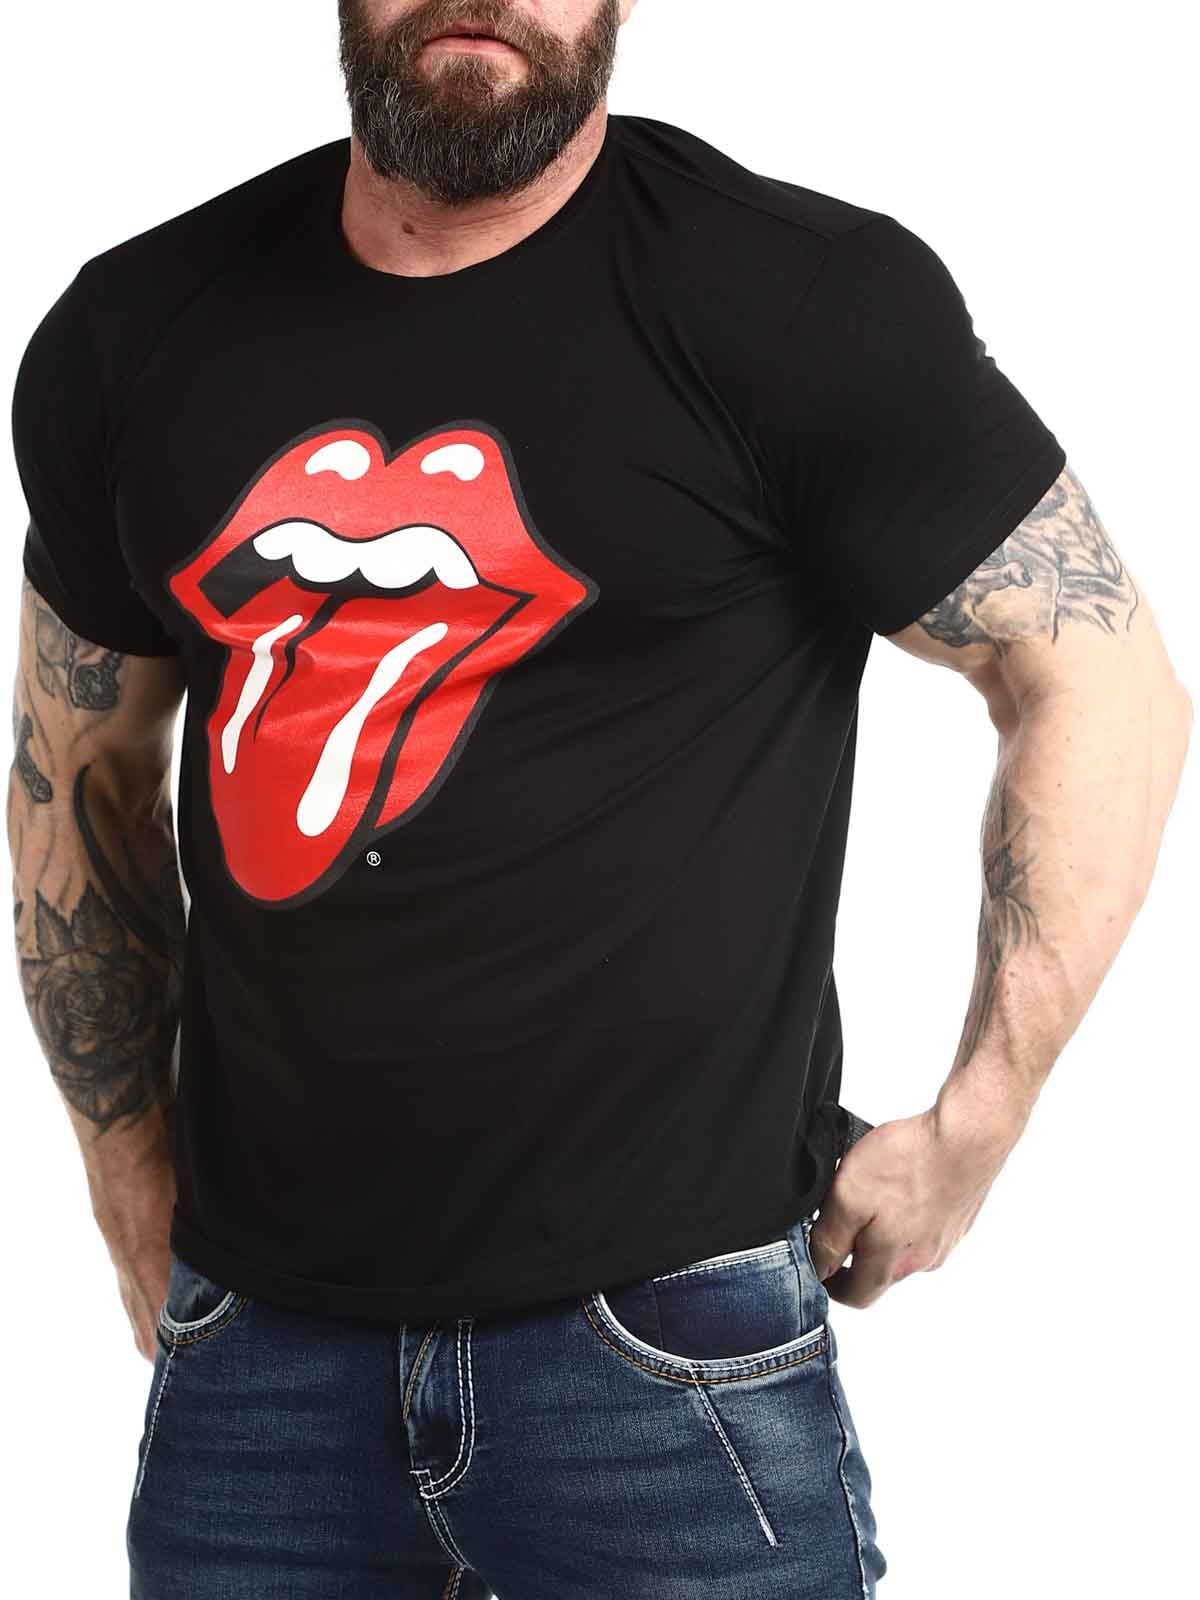 Rolling Stones Tongue Tshirt_4.jpg